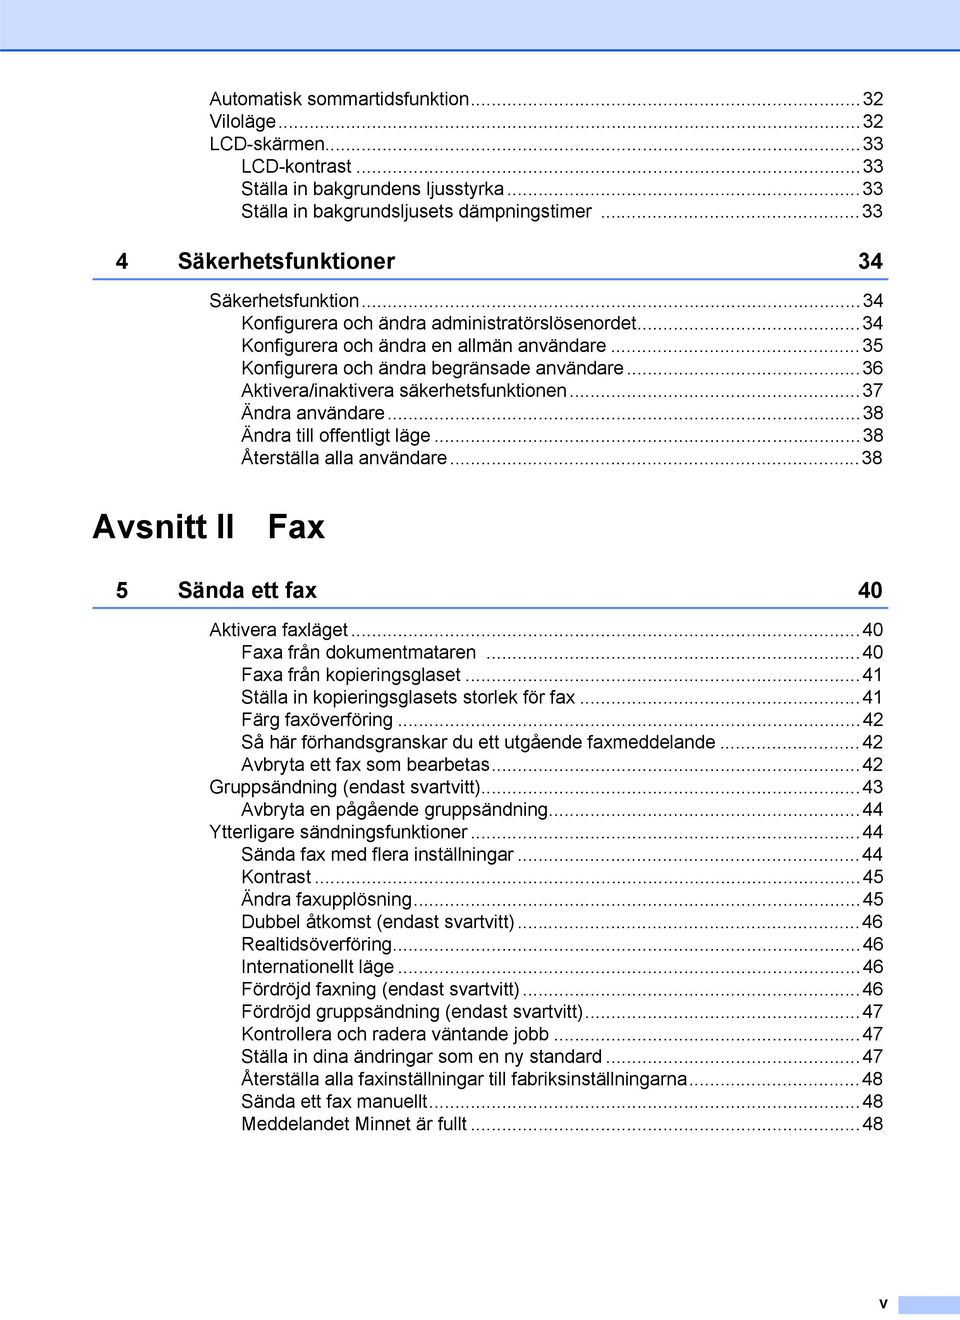 ..36 Aktivera/inaktivera säkerhetsfunktionen...37 Ändra användare...38 Ändra till offentligt läge...38 Återställa alla användare...38 Avsnitt II Fax 5 Sända ett fax 40 Aktivera faxläget.